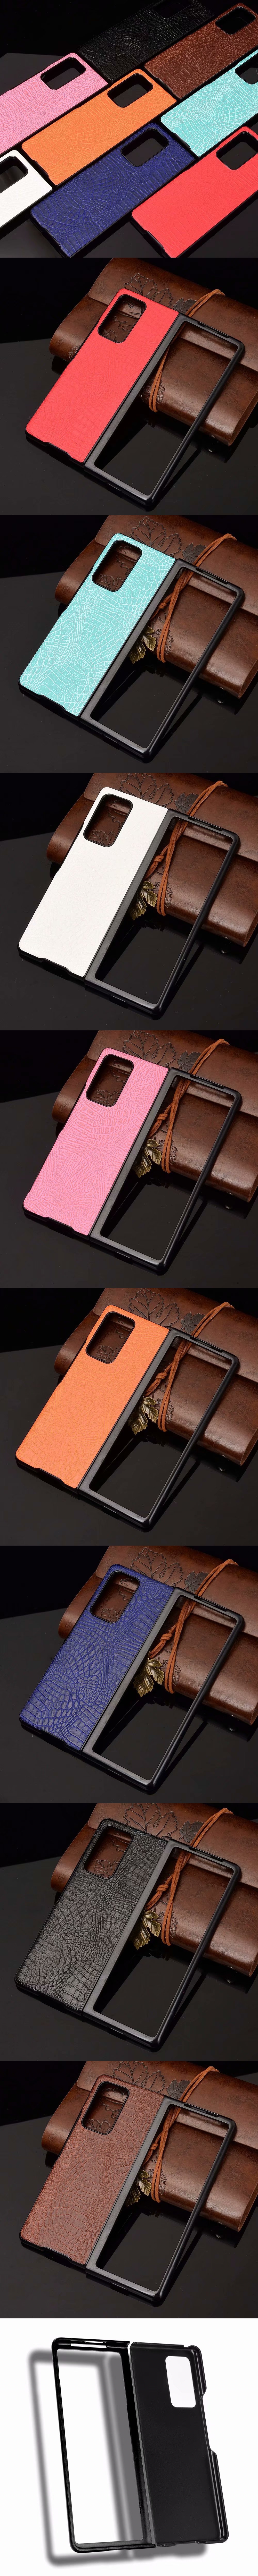 315-Samsung-摺疊分離硬殼超薄保護殼鱷魚紋貼皮保護套